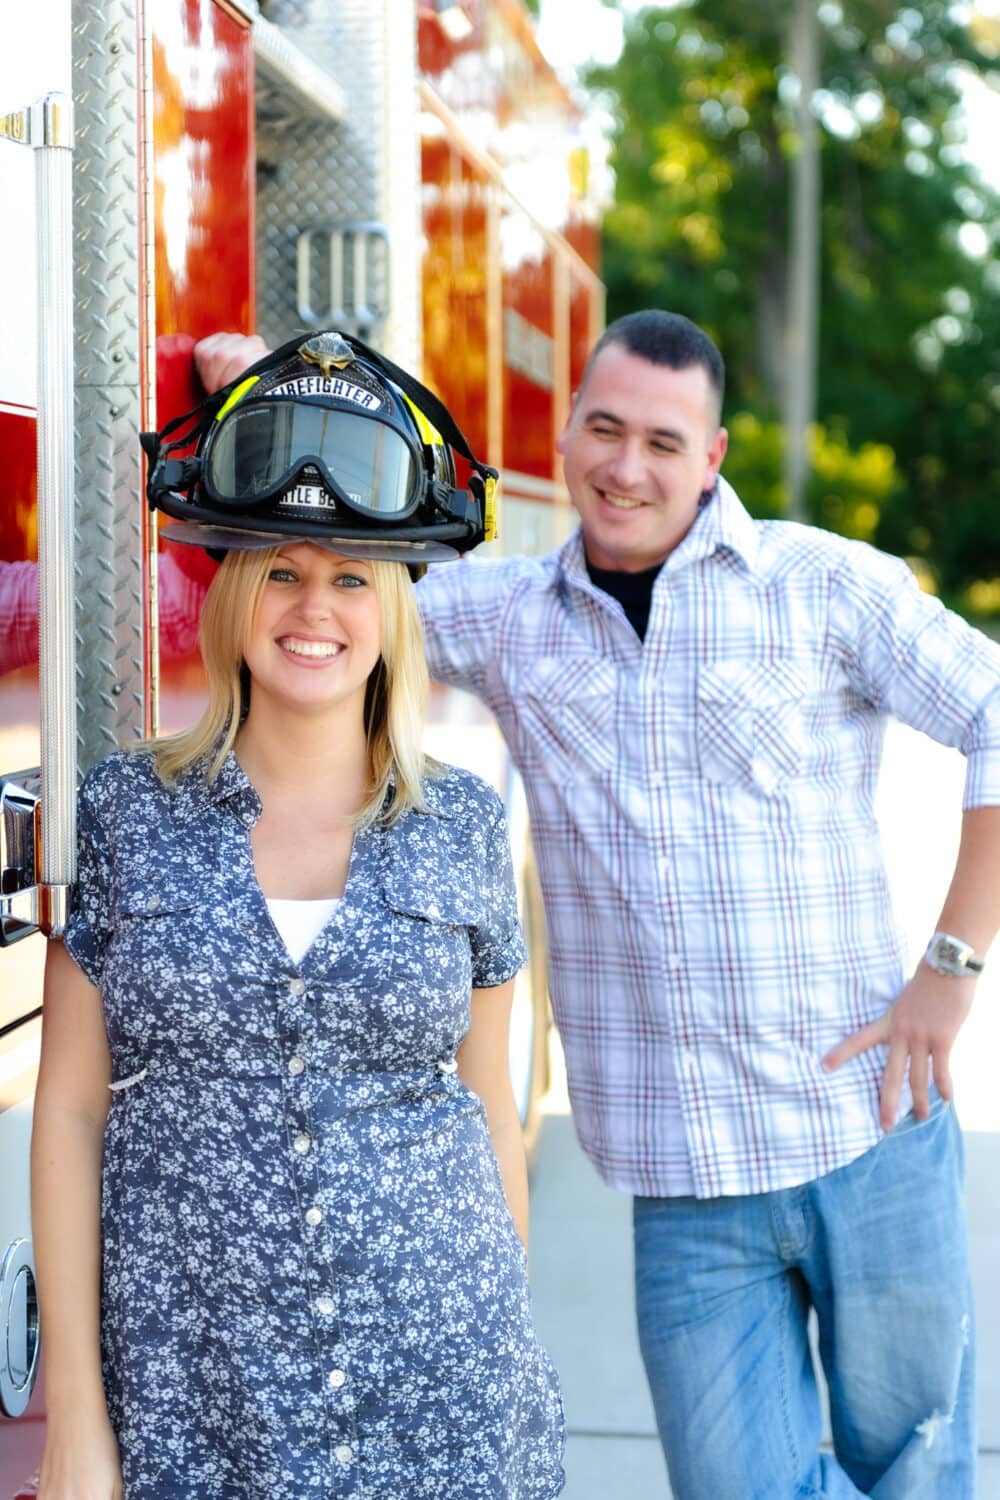 Cute engagement portrait at Myrtle Beach fire station - Myrtle Beach Fire Station